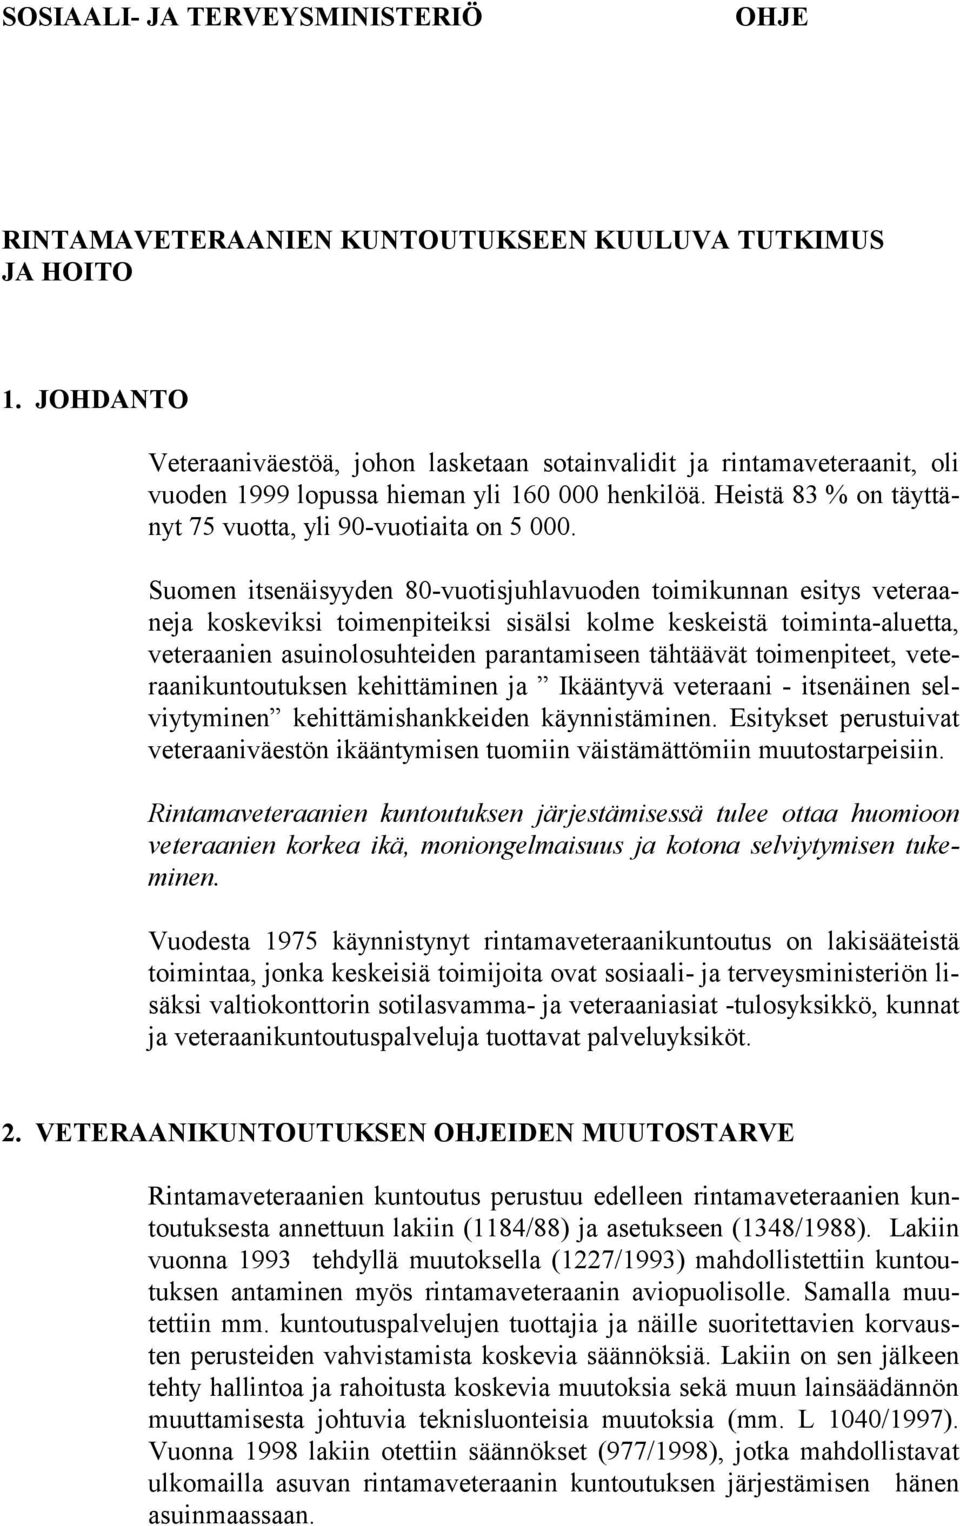 Suomen itsenäisyyden 80-vuotisjuhlavuoden toimikunnan esitys veteraaneja koskeviksi toimenpiteiksi sisälsi kolme keskeistä toiminta-aluetta, veteraanien asuinolosuhteiden parantamiseen tähtäävät